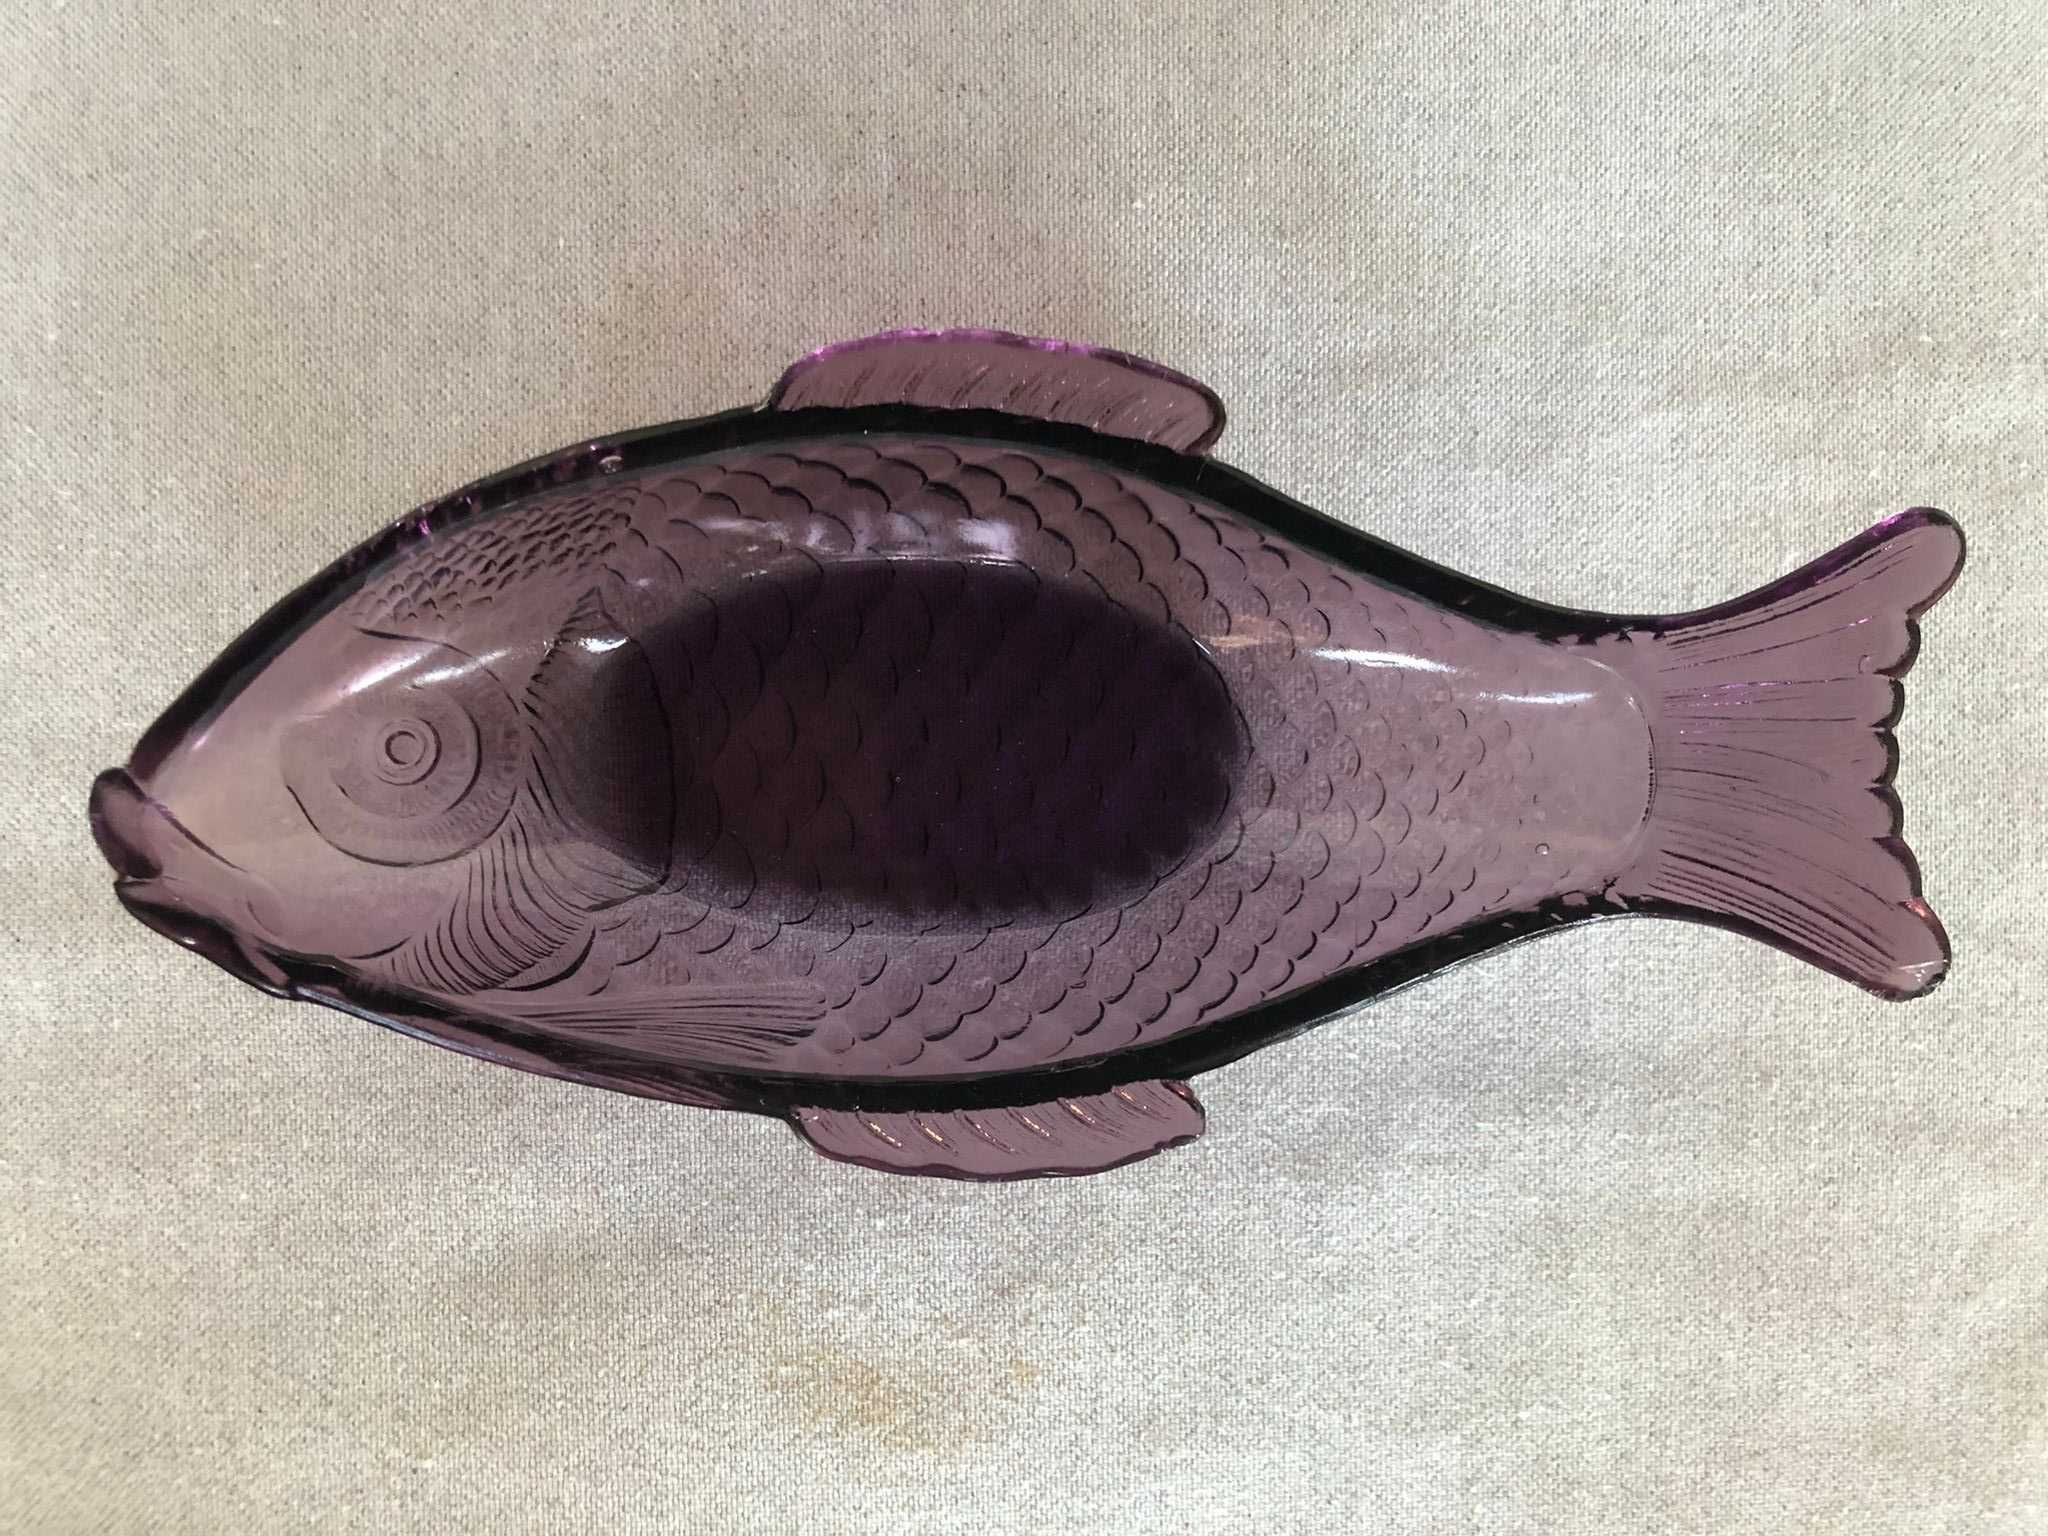 Travessa de Vidro Lilás em forma de peixe